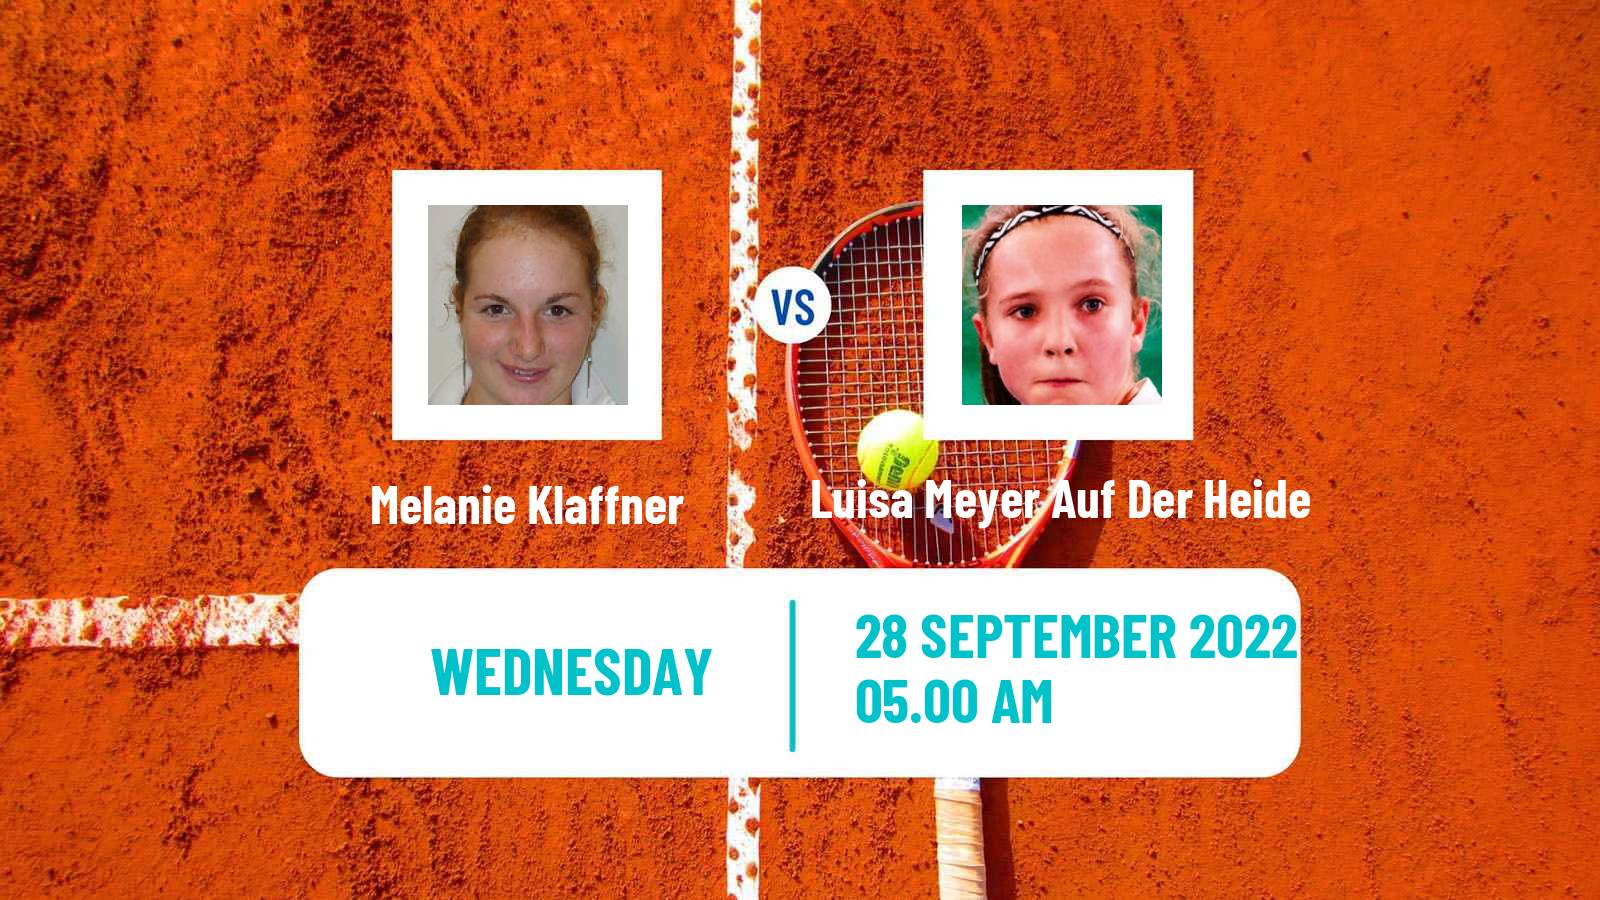 Tennis ITF Tournaments Melanie Klaffner - Luisa Meyer Auf Der Heide